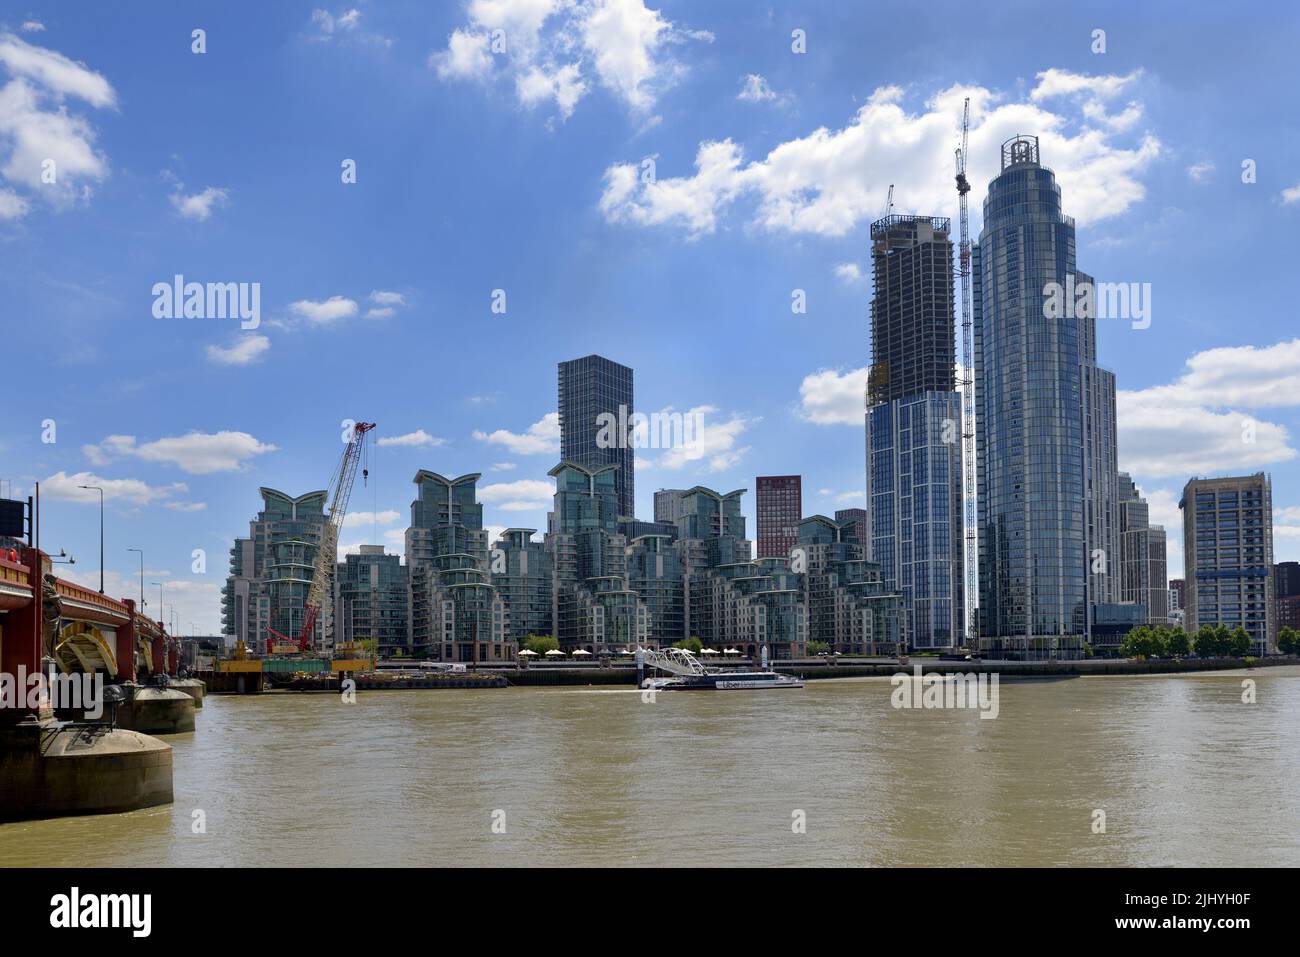 Londres, Inglaterra, Reino Unido. Modernos bloques de apartamentos en la urbanización St George Wharf junto al río en Vauxhall Foto de stock